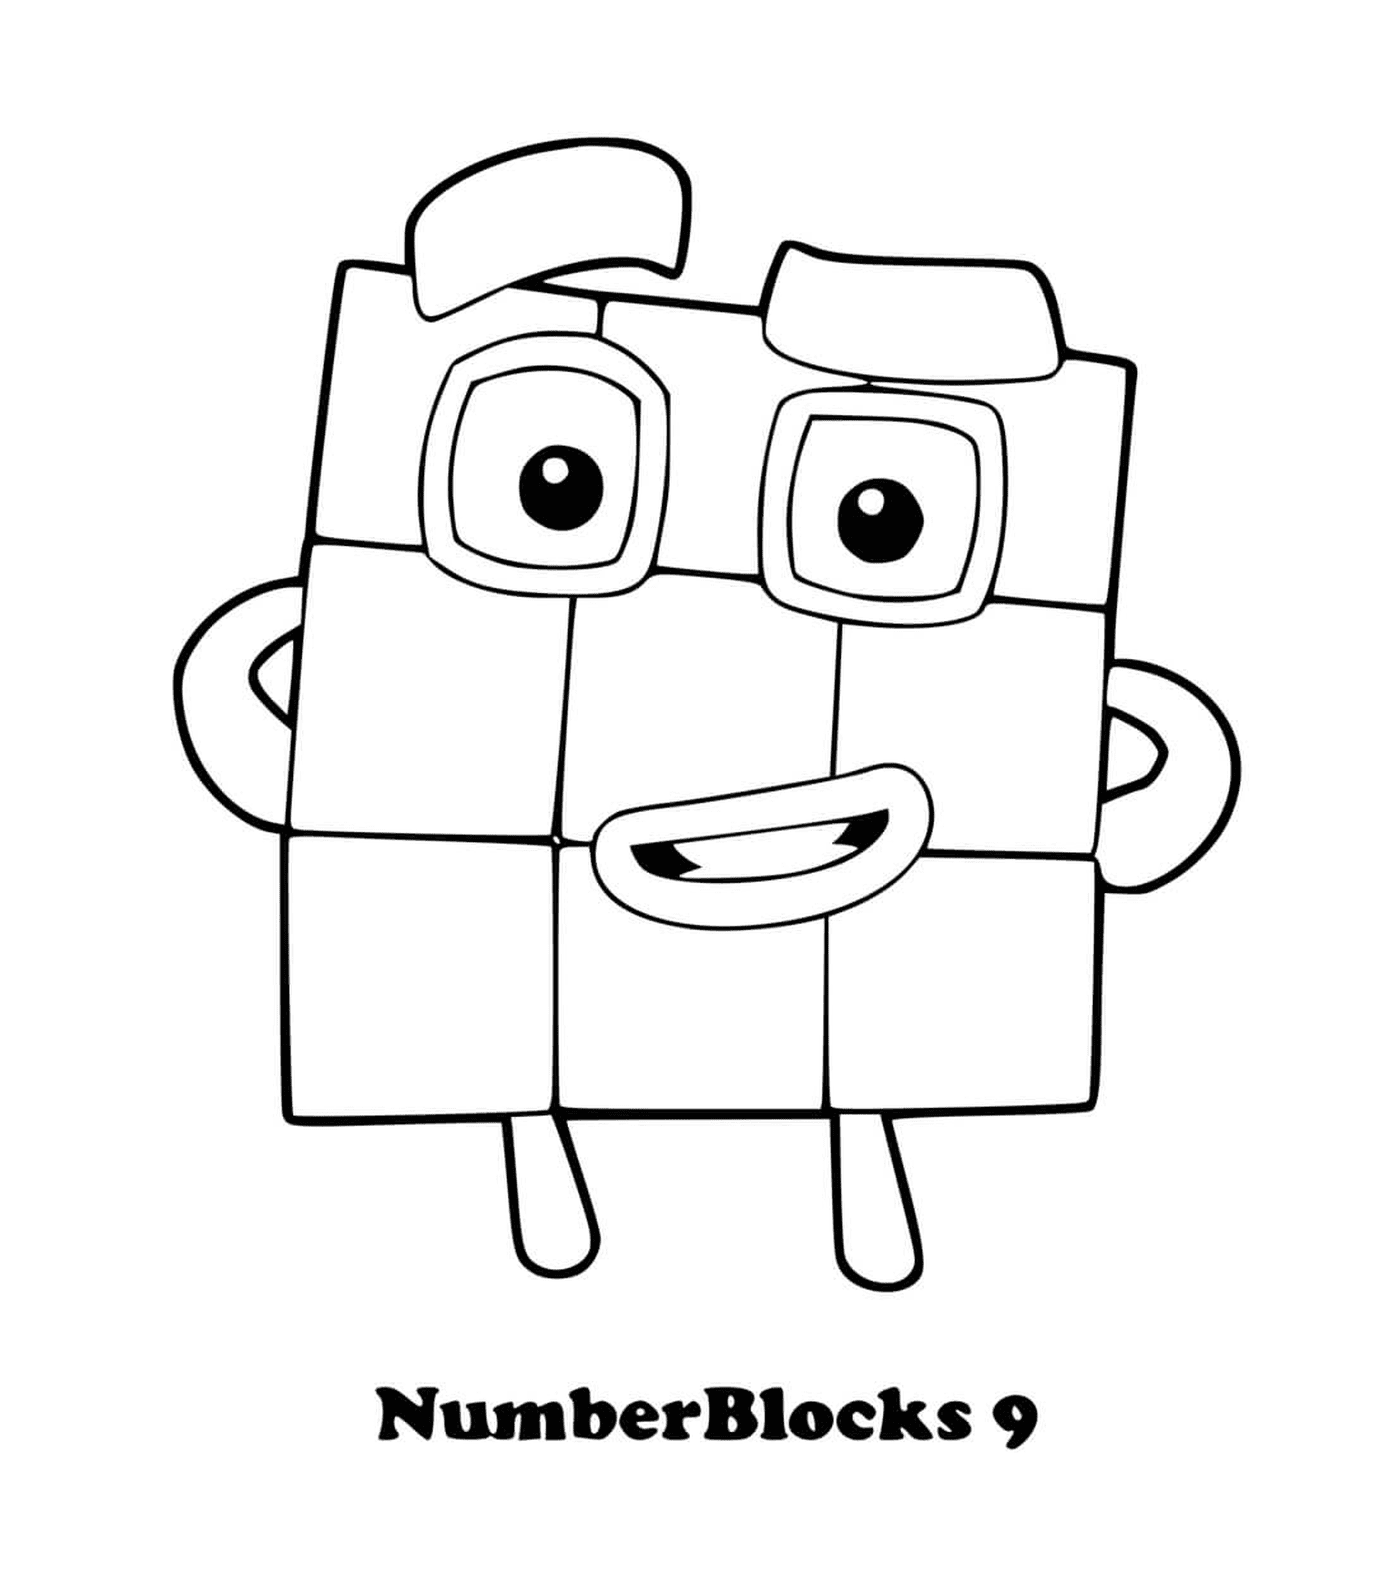  Numberblocks Nummer 9, ein Quadrat mit Augen 